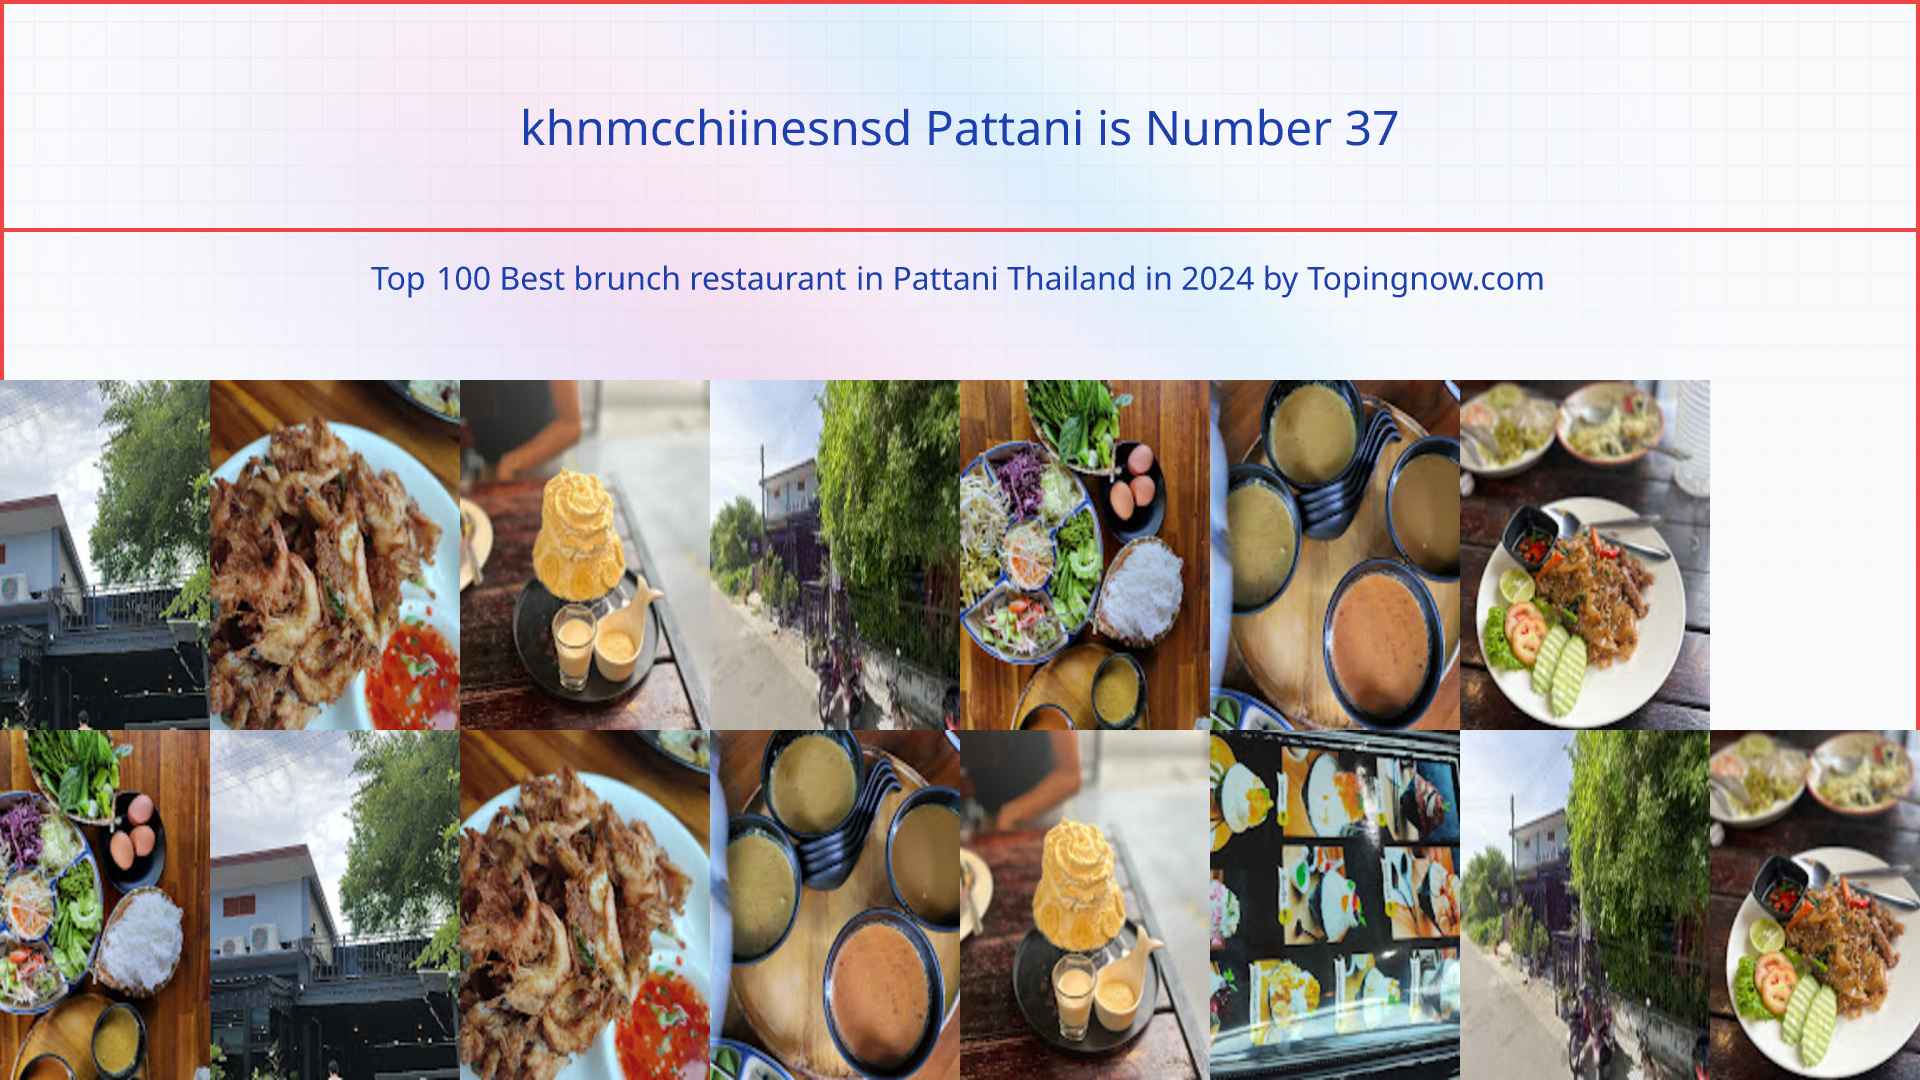 khnmcchiinesnsd Pattani: Top 100 Best brunch restaurant in Pattani Thailand in 2024